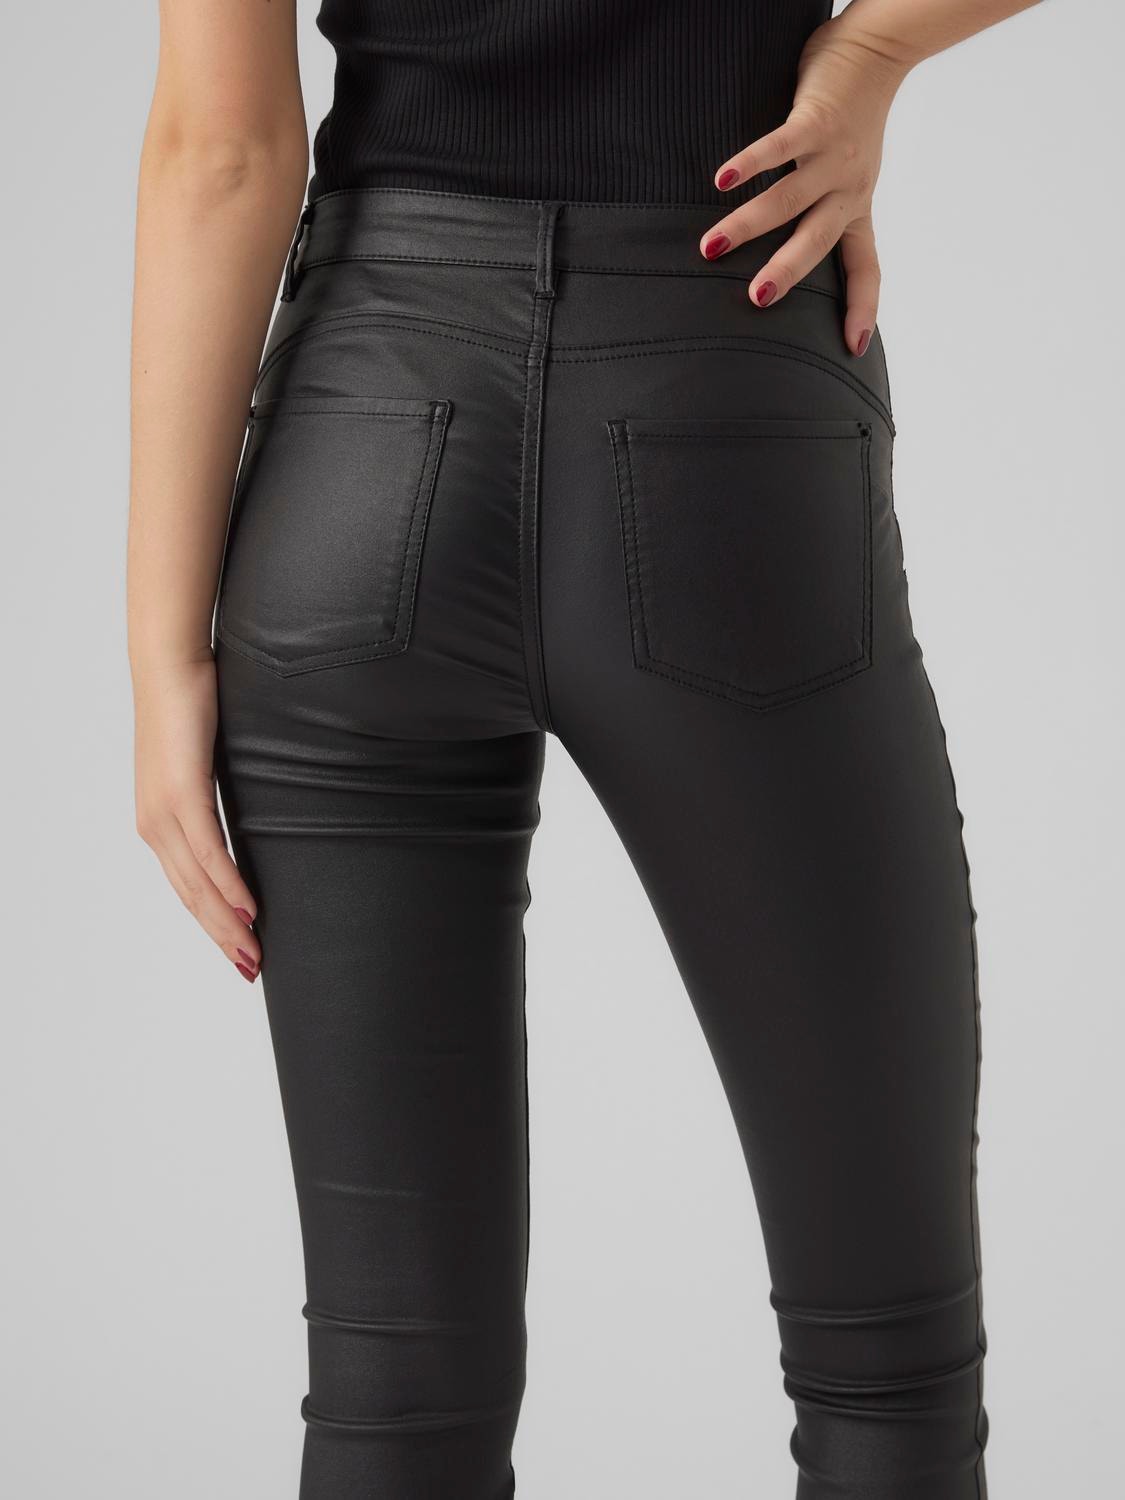 Vero Moda VMALIA Pantalones -Black - 10291078